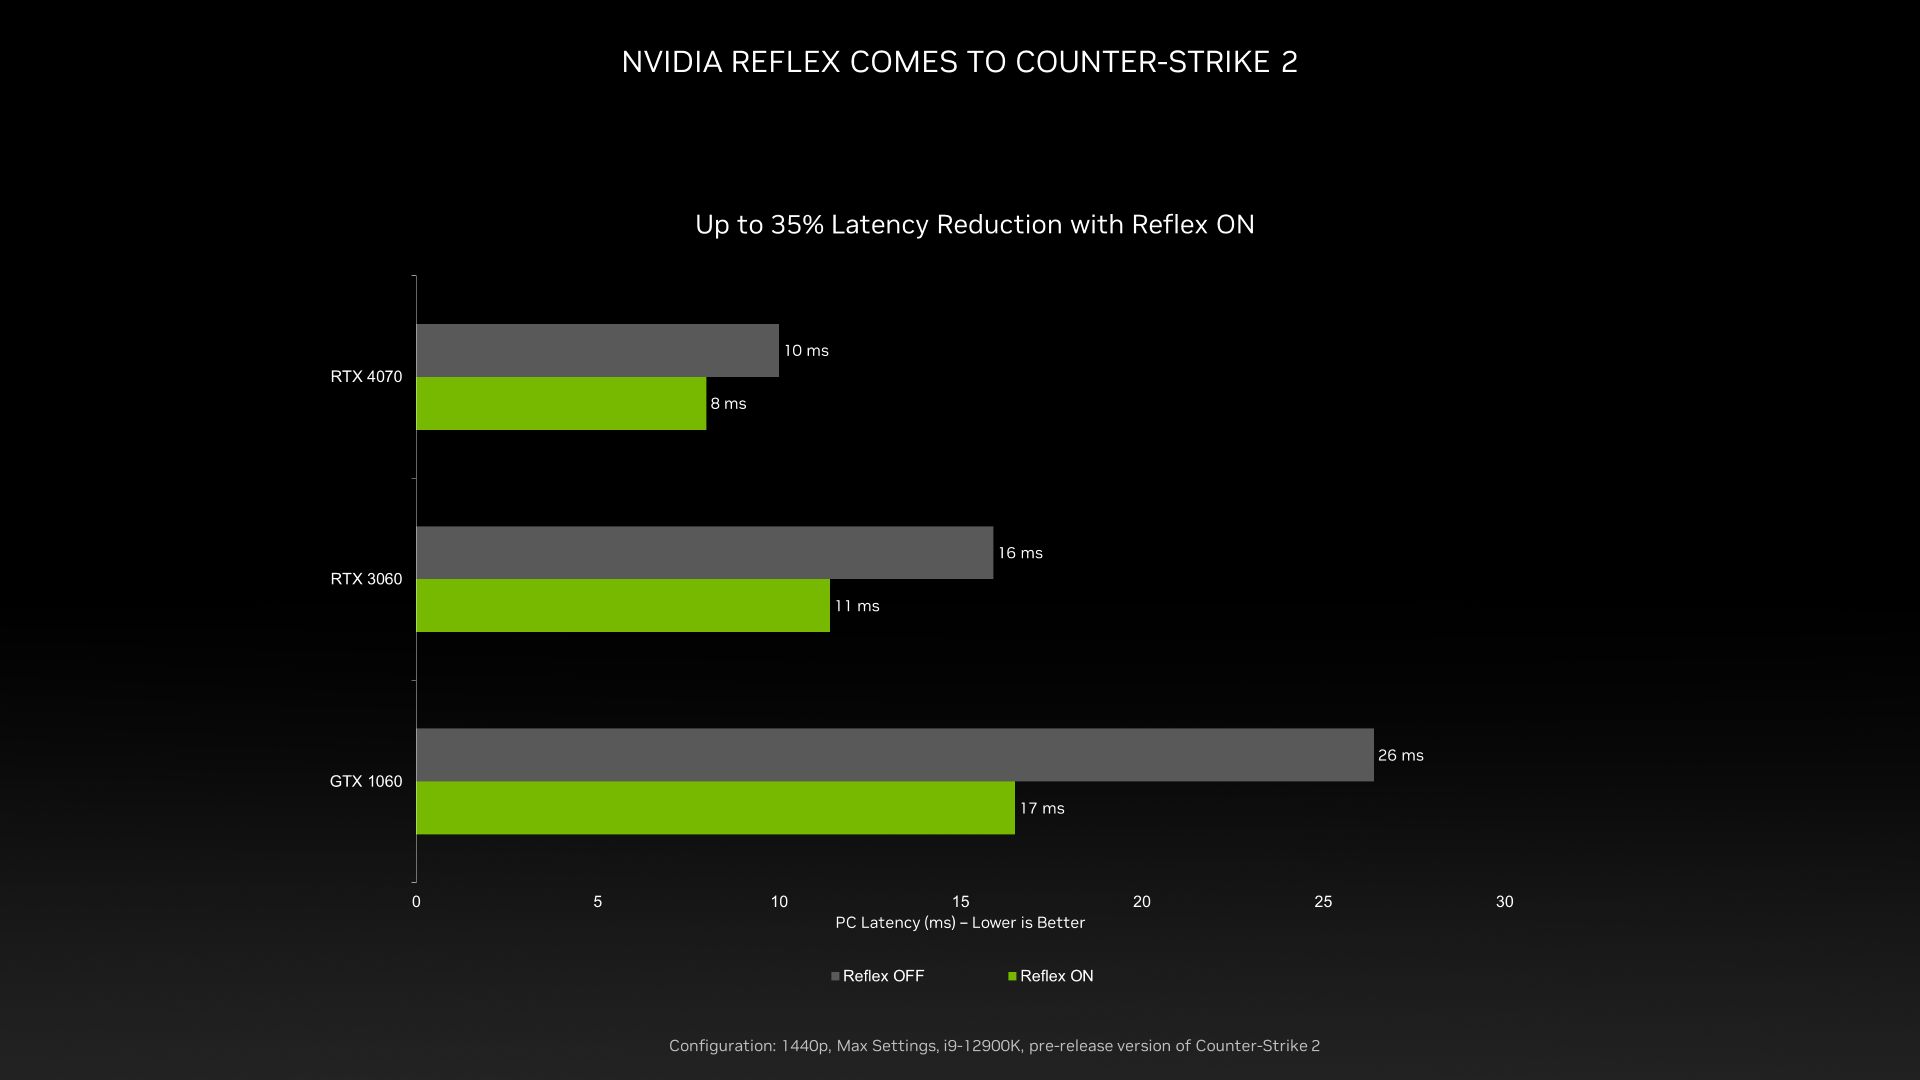 Graphique Counter Strike 2 Nvidia Reflex avec barres vertes et grises